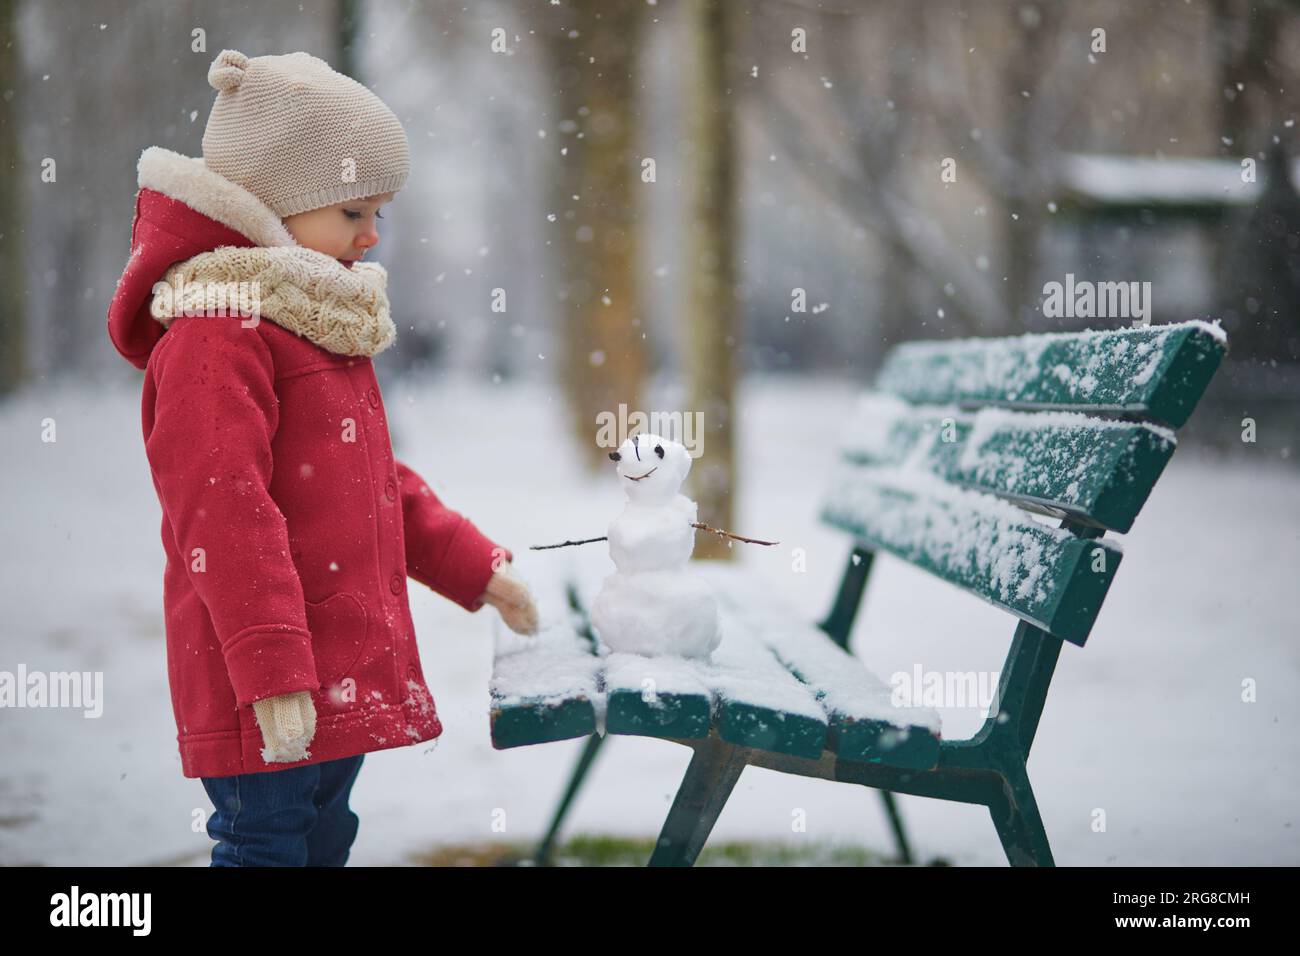 Ein bezauberndes Kleinkind, das an einem Tag mit starkem Schneefall einen Schneemann baut. Glückliches Kind, das mit Schnee spielt. Winteraktivitäten für Kinder Stockfoto